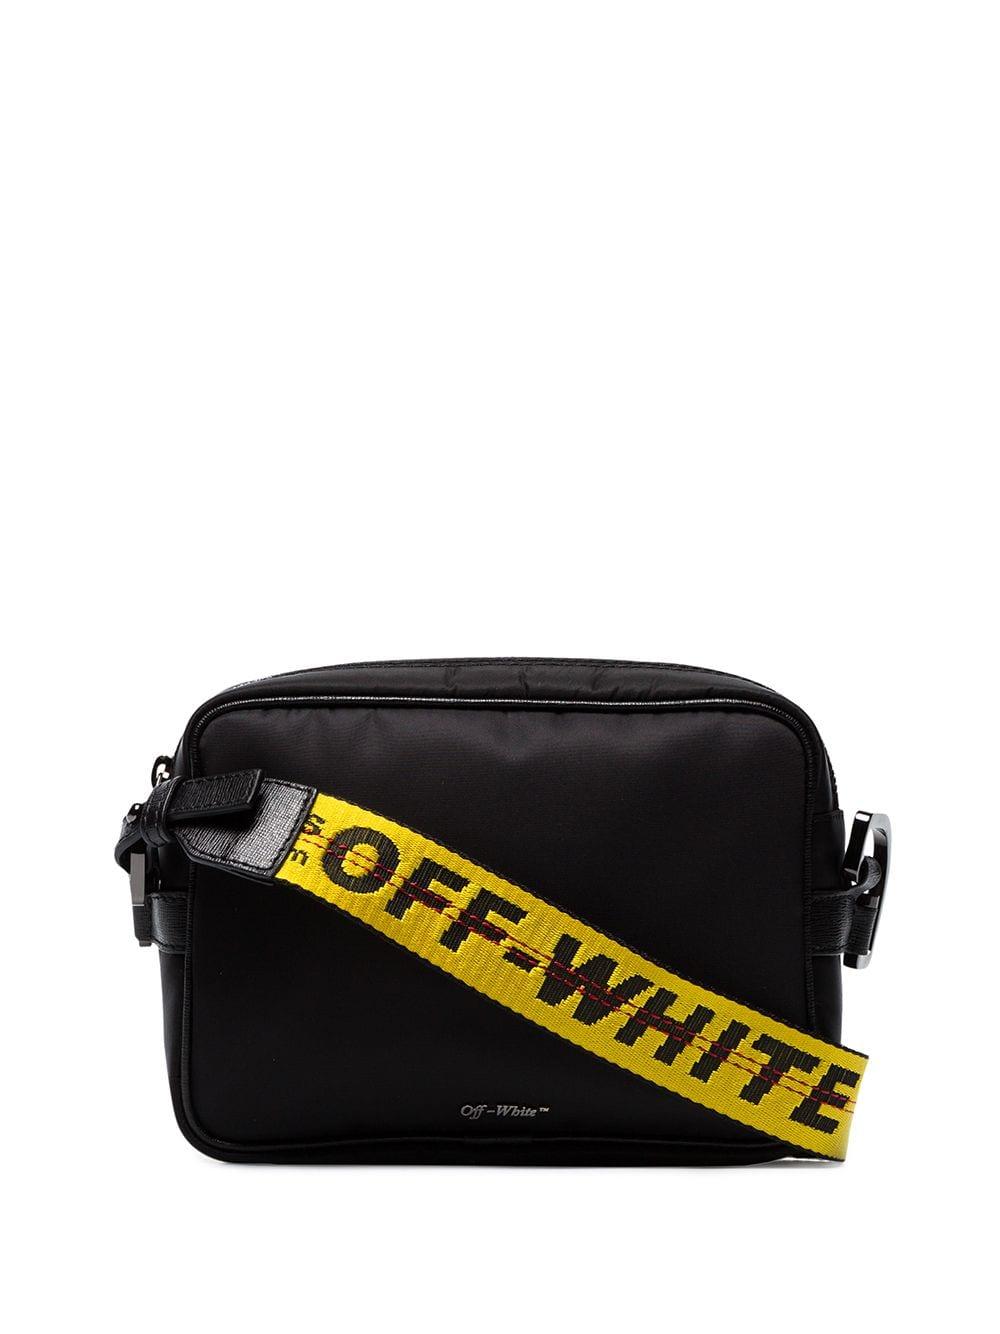 Off-White c/o Virgil Abloh Black Cordura Logo Print Cross-body Bag for Men